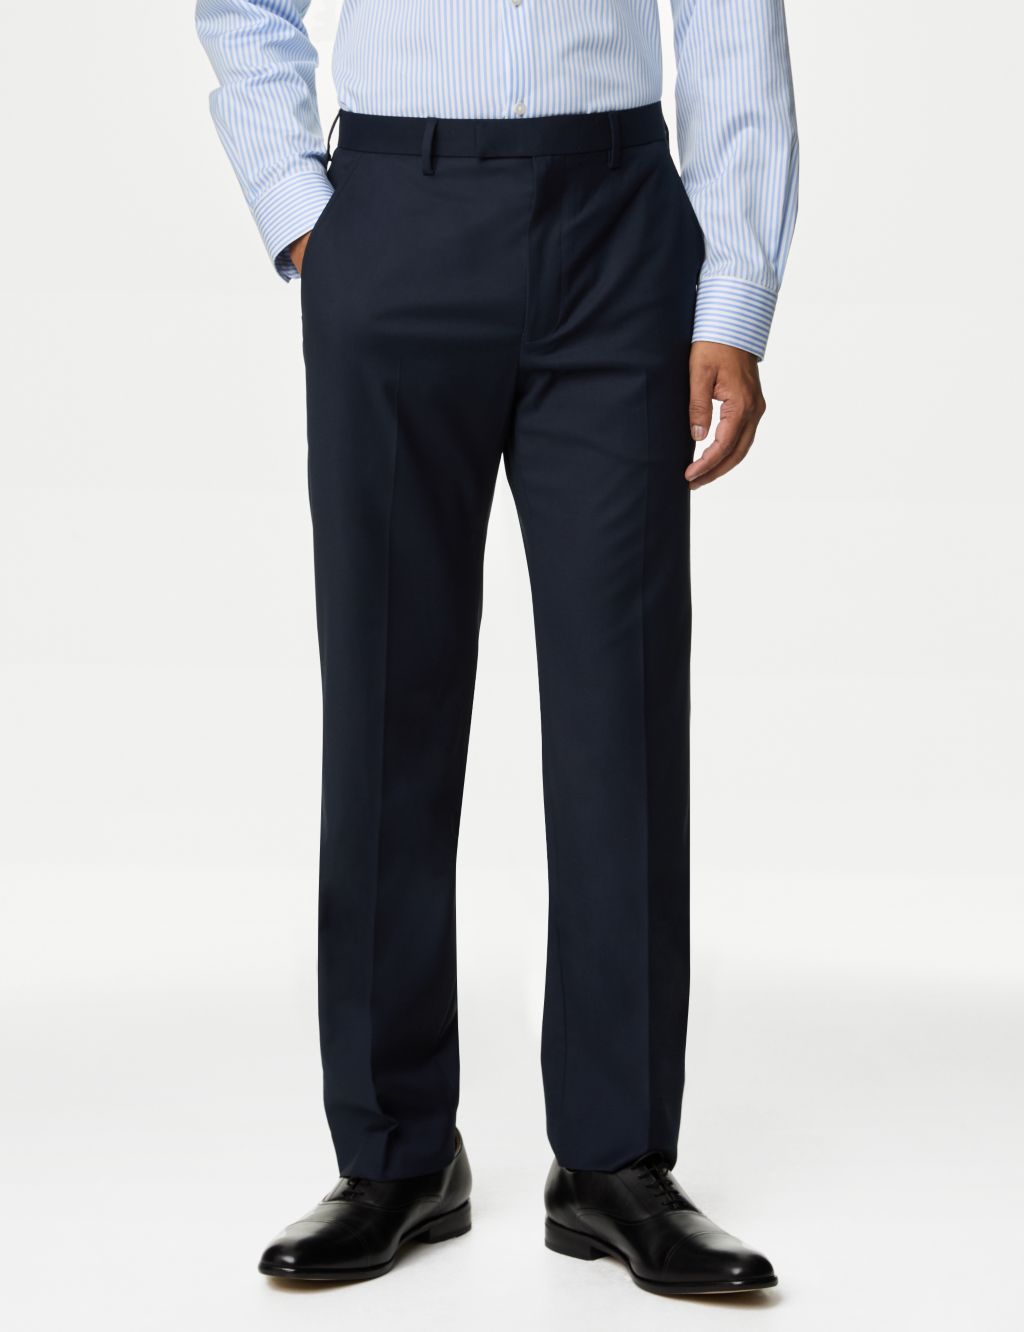 Buy CLITHS Navy Blue Formal Pants for Men Slim Fit/Flat Front